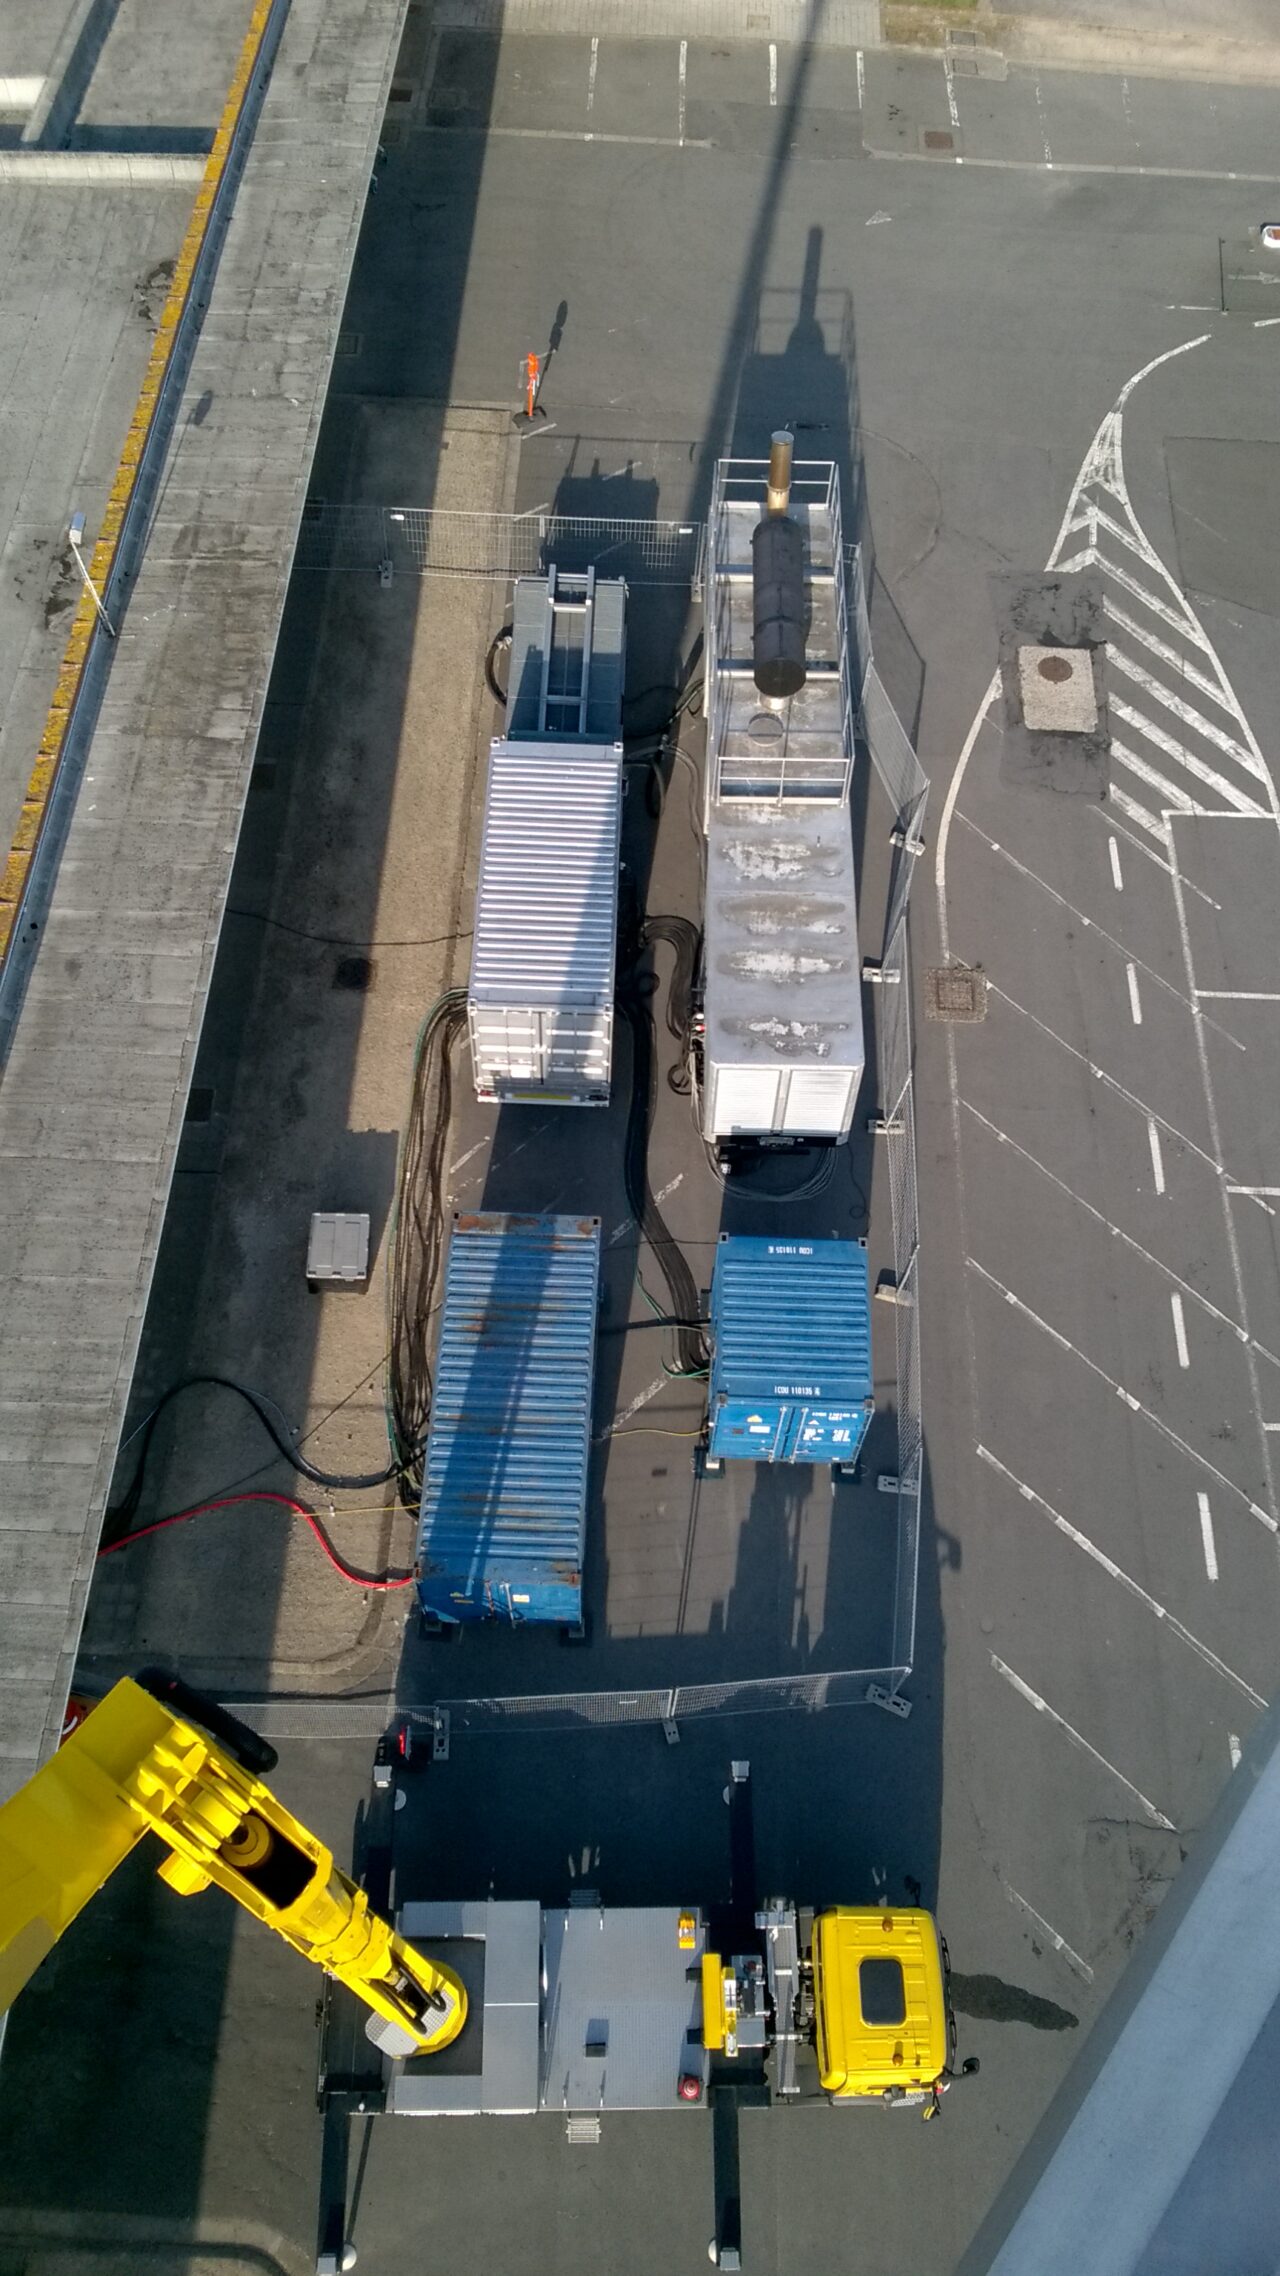 Protection mobile de l’alimentation pendant la conversion de l’UPS fixe à l’aéroport d’Ostende.